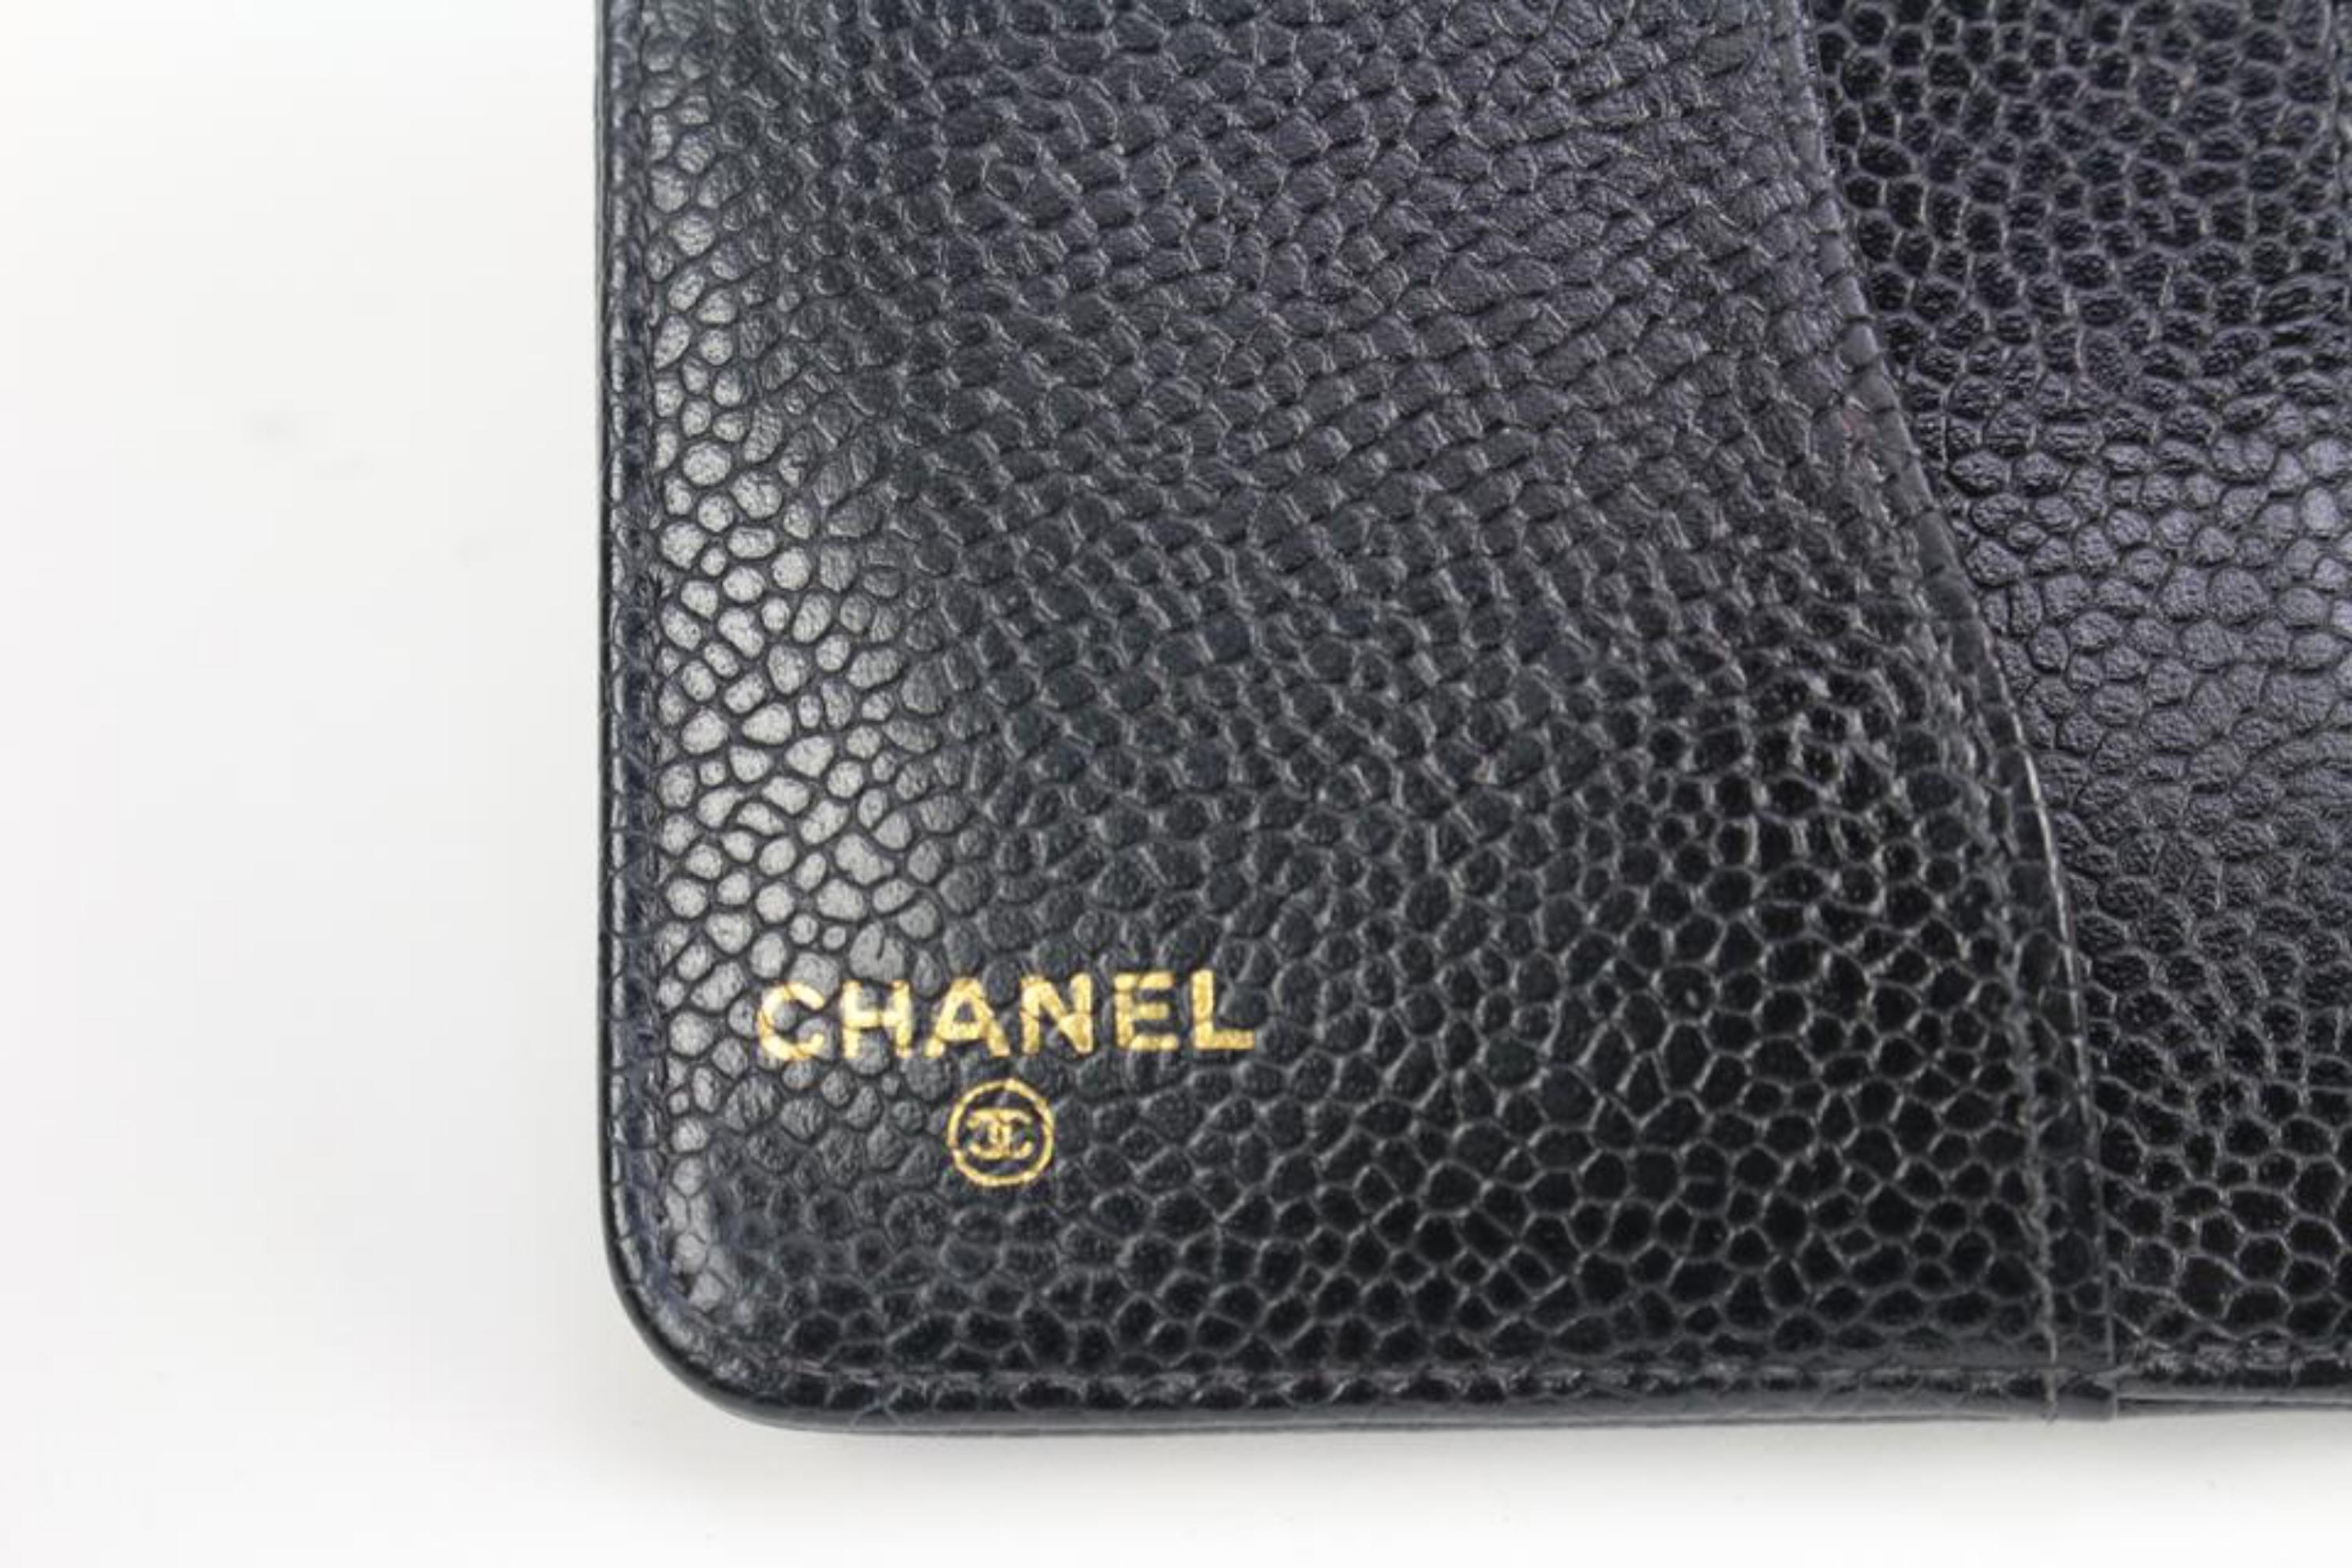 Chanel Black Caviar Leather Agenda Cover 98cz412s 1